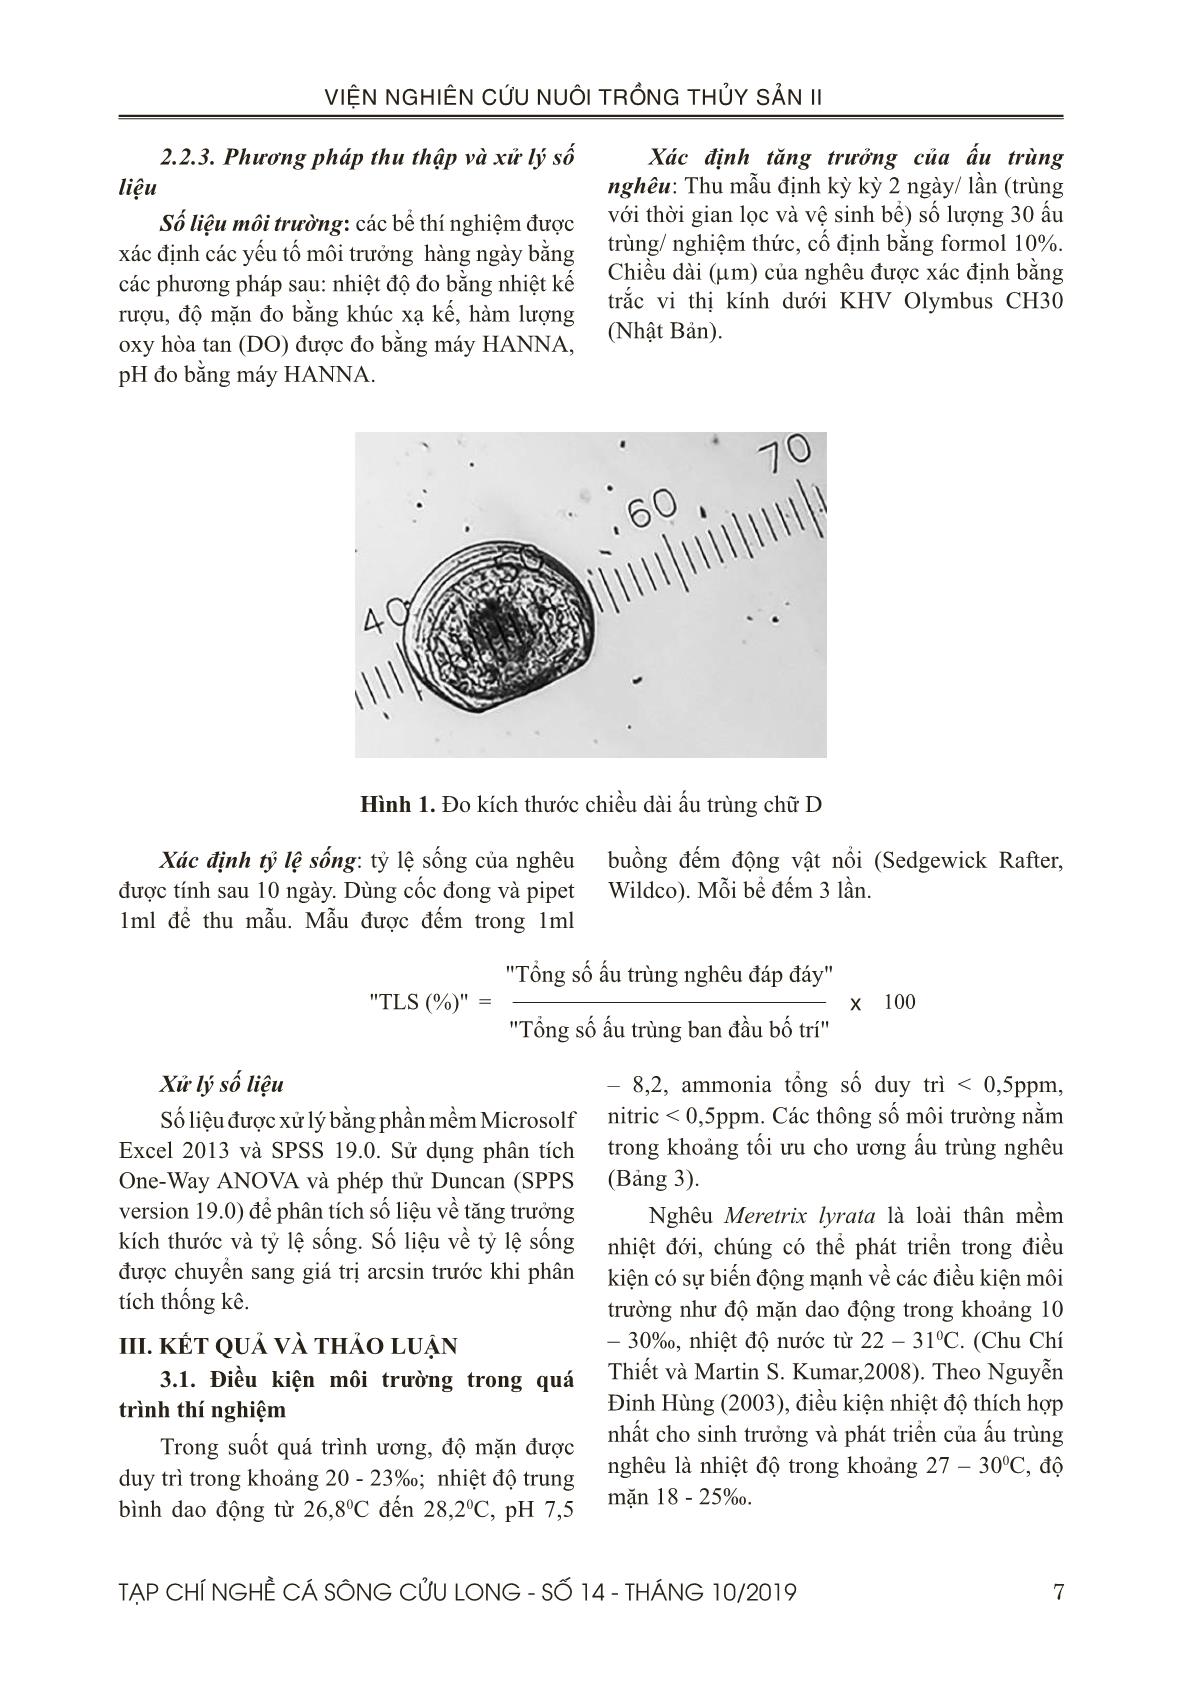 Sử dụng tảo cô đặc thalassiosira sp. trong ương ấu trùng nghêu Bến tre (meretrix lyrata sowerby, 1851) trang 5